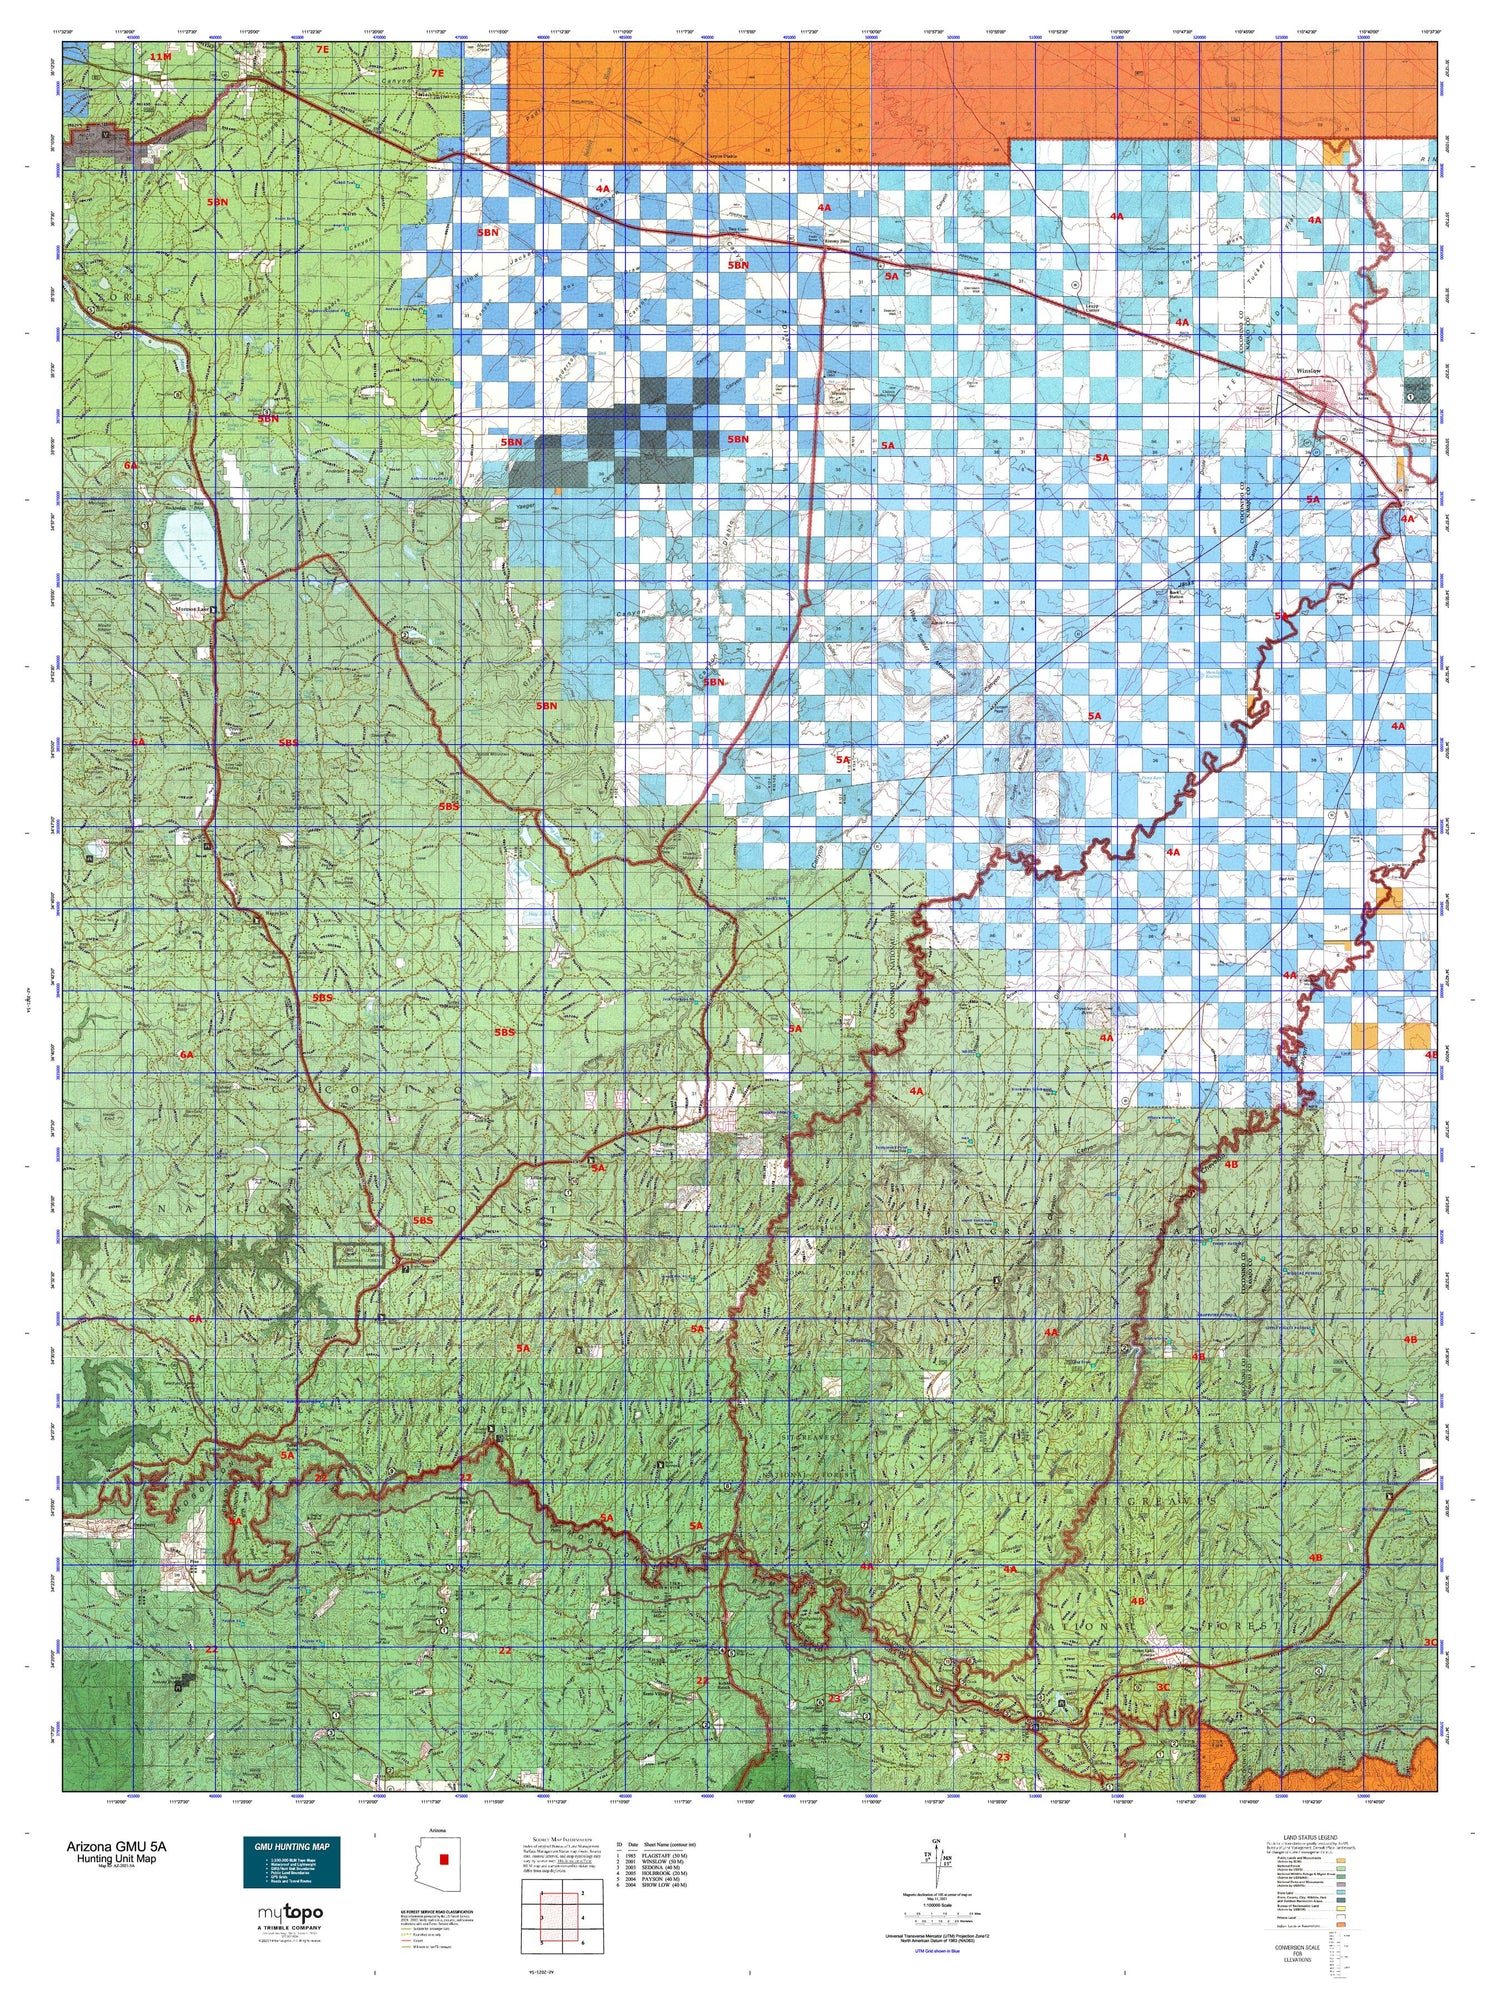 Arizona GMU 5A Map Image